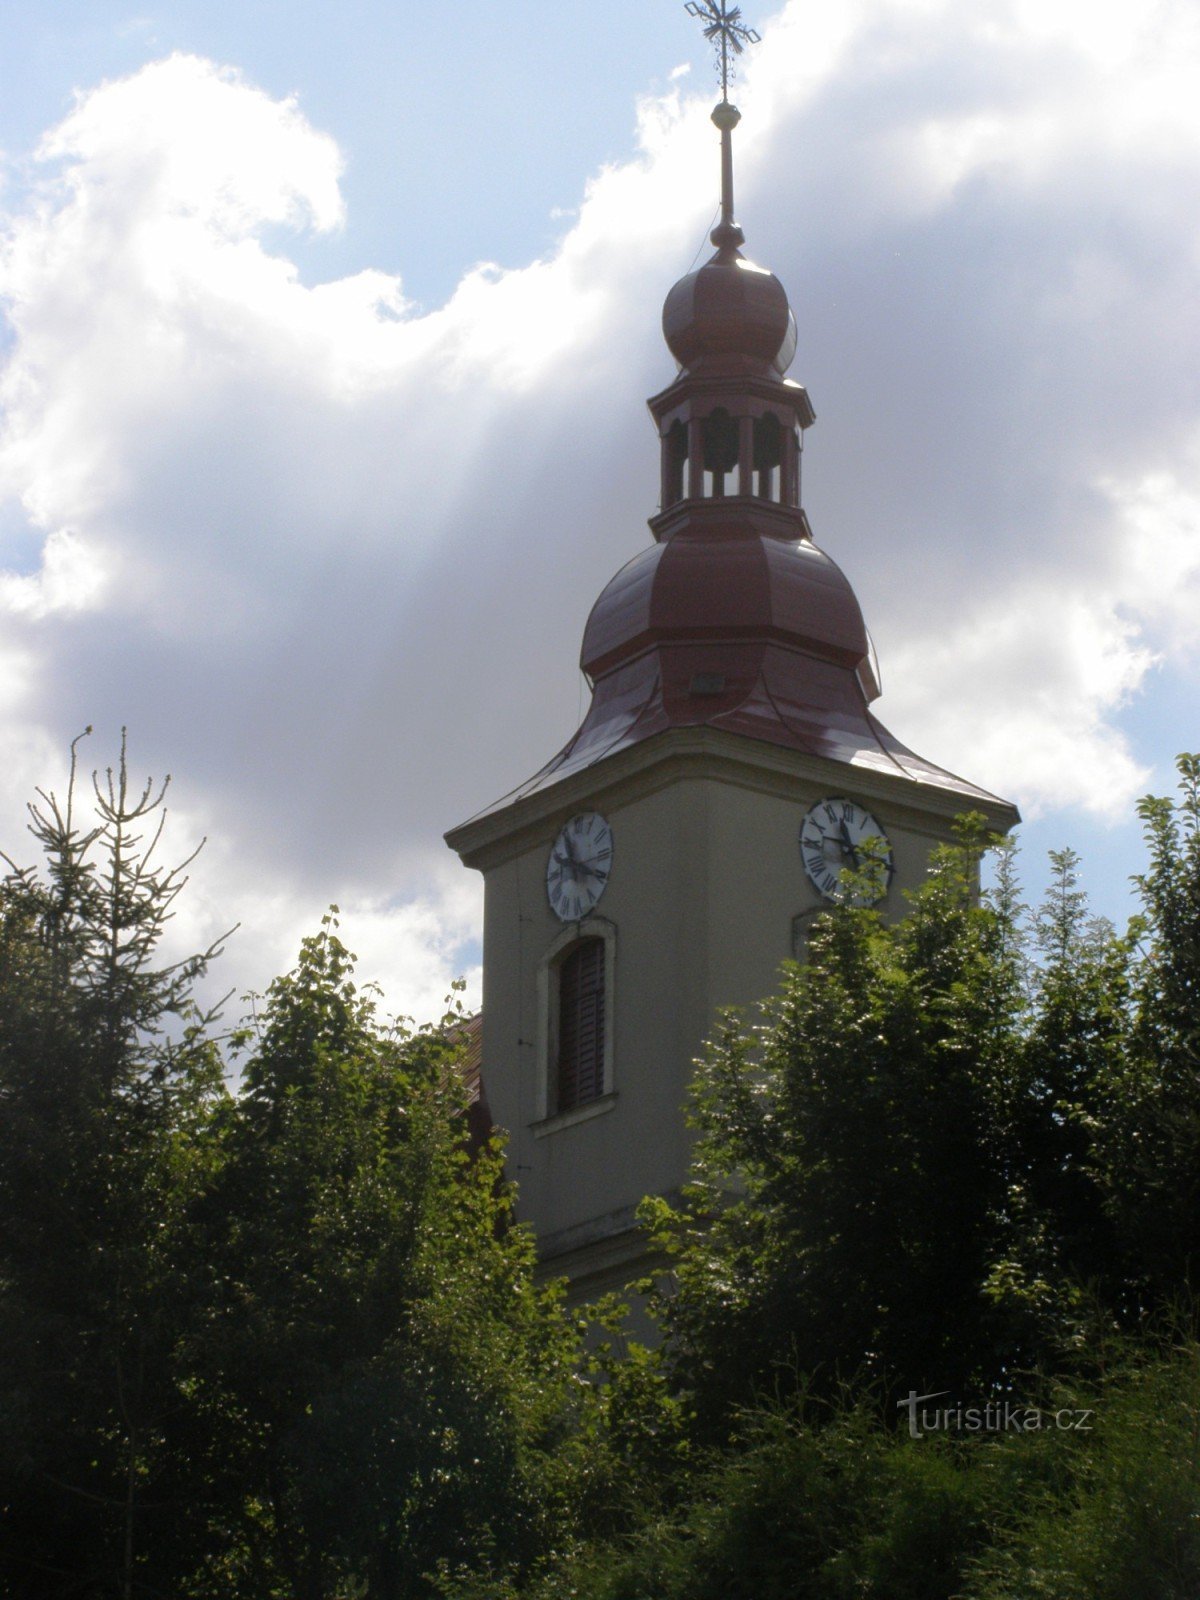 Стара Пака - церковь св. Лоуренс